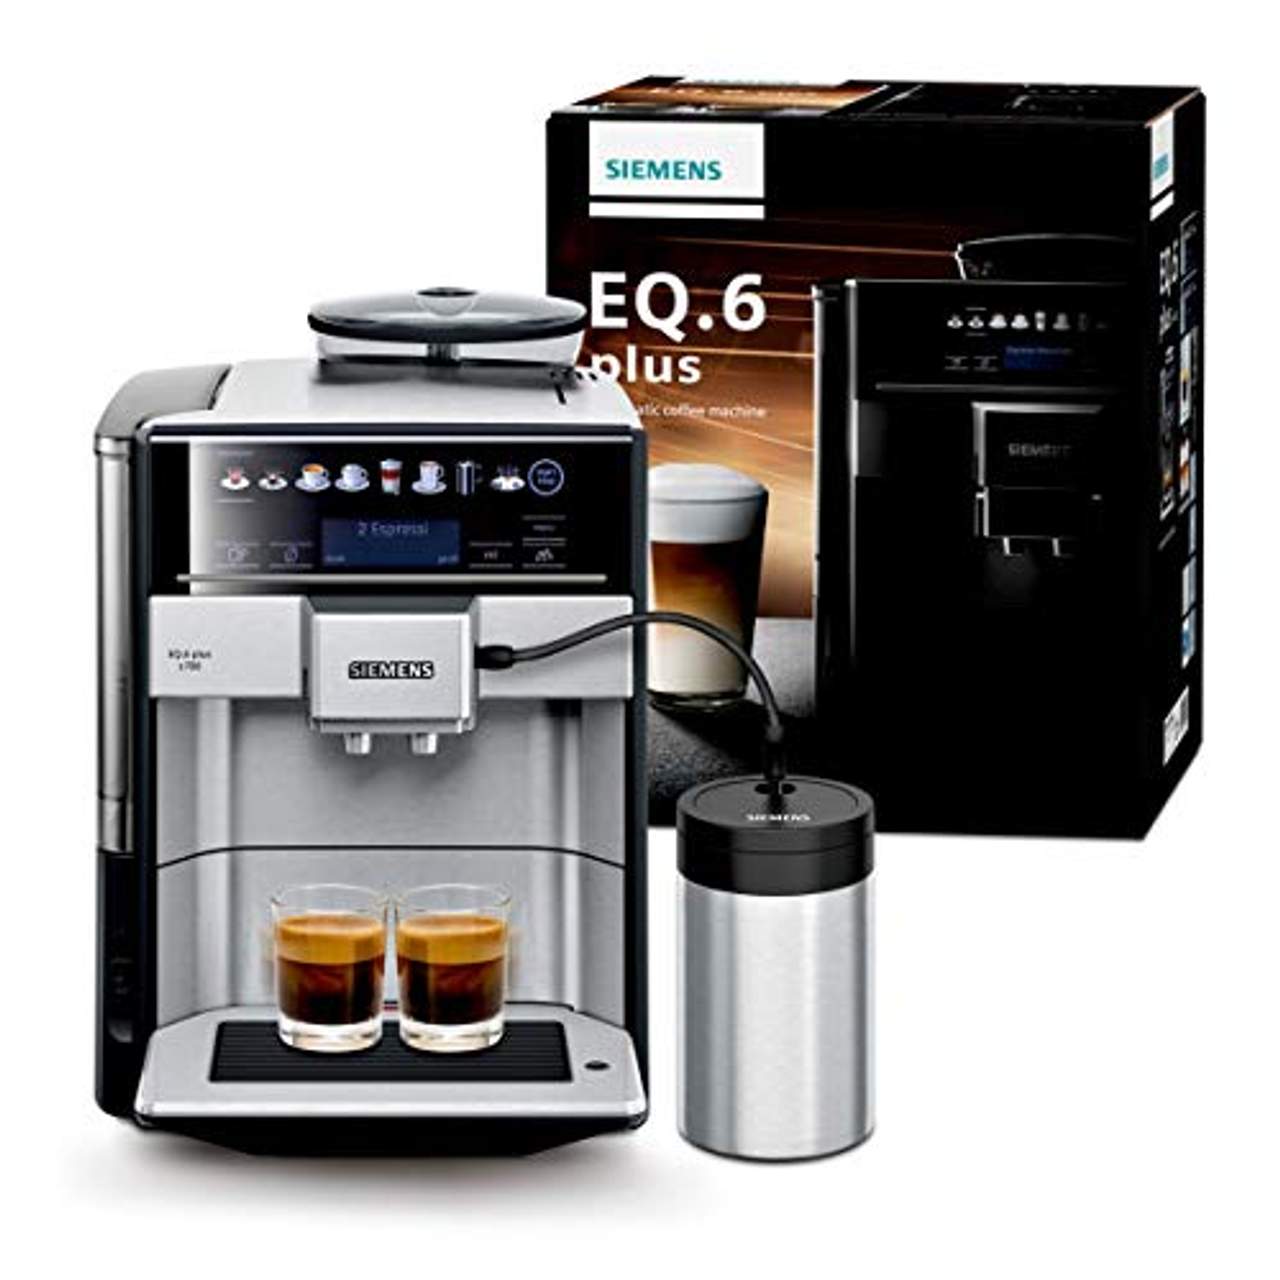 Siemens Kaffeevollautomat EQ.6 plus s700 